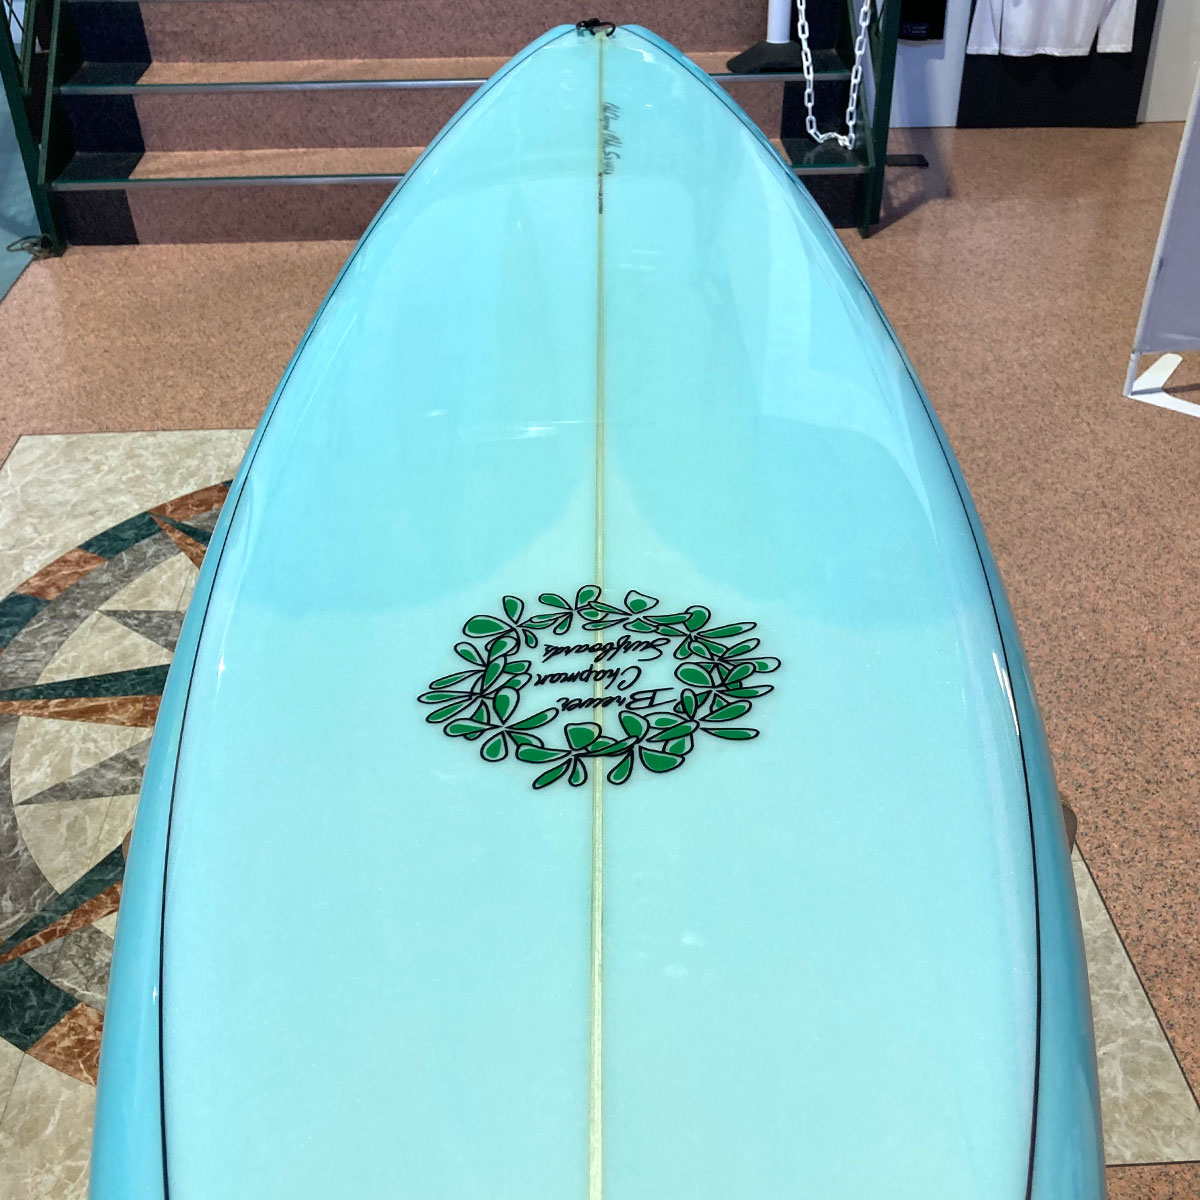 中古ボード サーフボード USED SURFBOARD 【used252】Owl Chapman Surfboards オウル チャップマン  サーフボード 6'6 サーフィン-ジャックオーシャンスポーツ